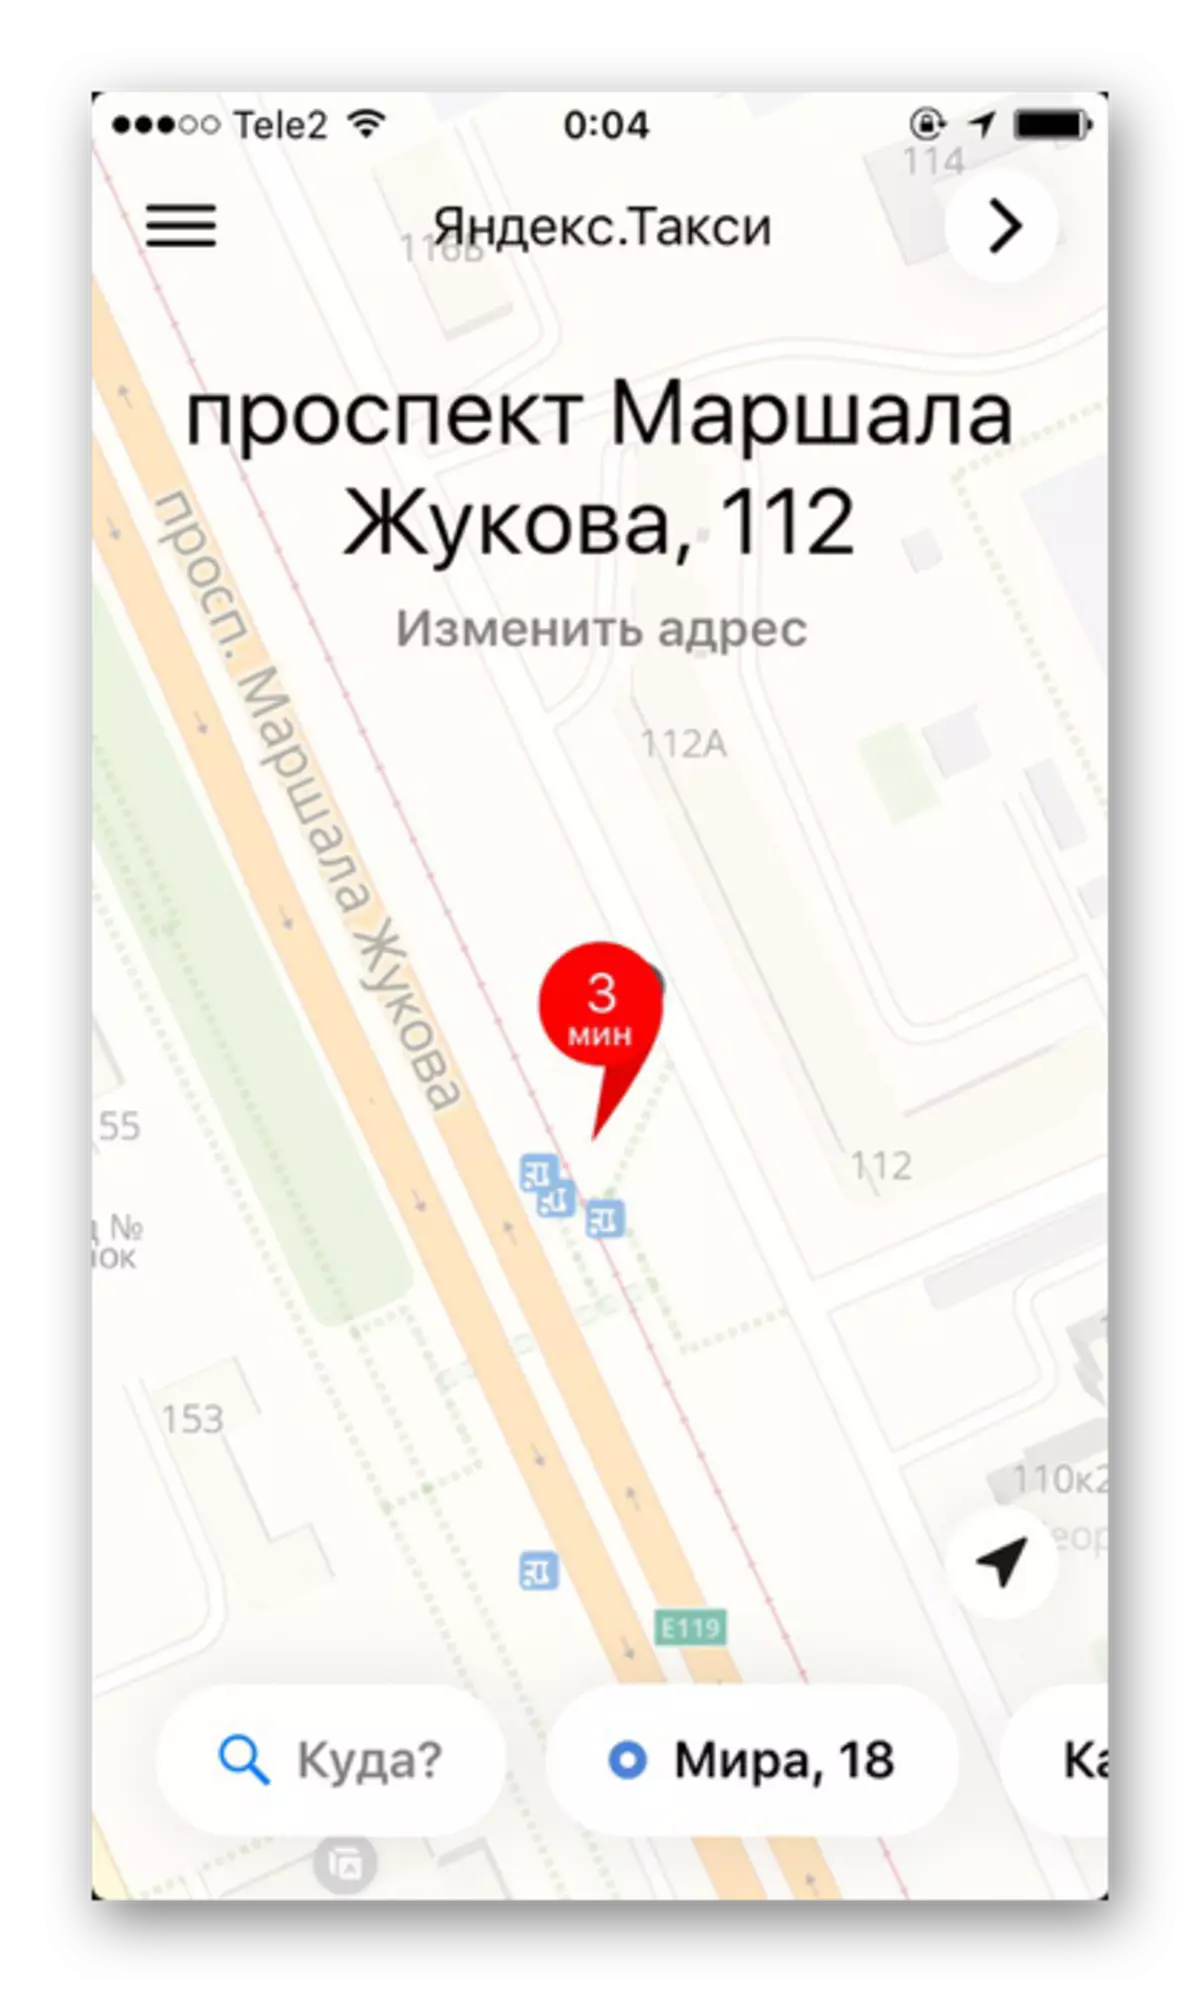 מאַפּע פון ​​דער געגנט מיט אַ דיטיילד באַצייכענונג פון גאסן און הייזער אין Yandex.taxi אַפּלאַקיישאַן אויף iPhone